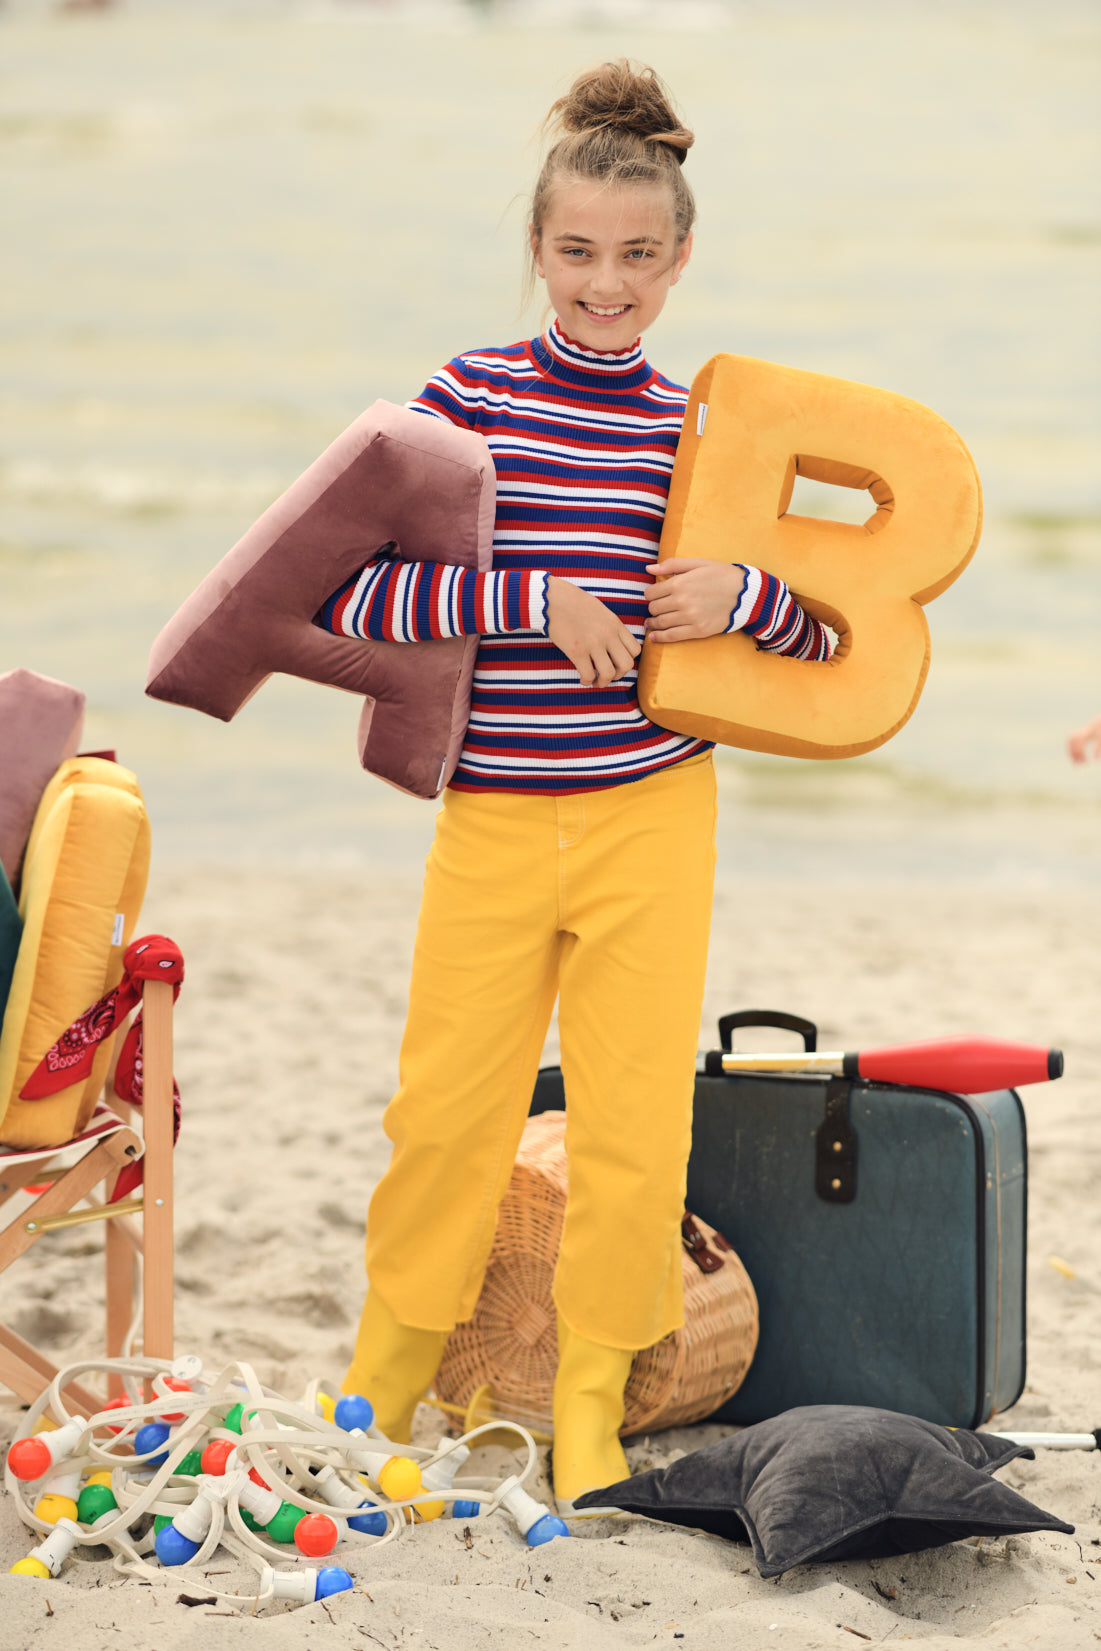 dziewczynka na plaży trzymająca w ręce poduszki literki welurowe A i B od Bettys Home